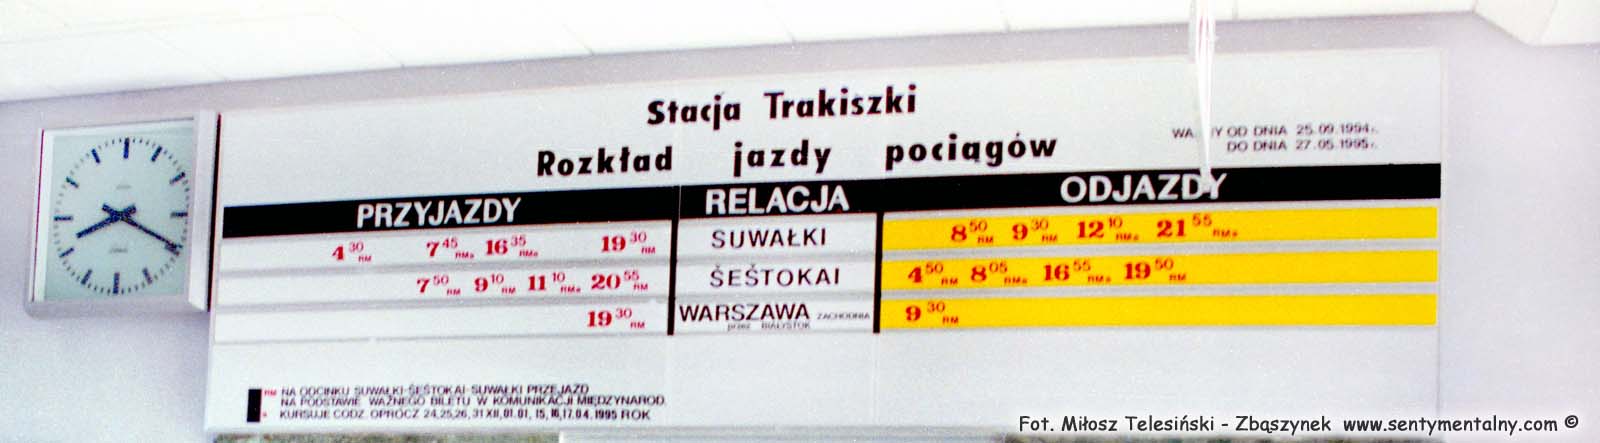 Rozkład jazdy na poczekalni stacji Trakiszki, obowiązujący od dnia 25.09.1994 do 27.05.1995. Zdjęcie wykonane w dniu 23.02.1995.